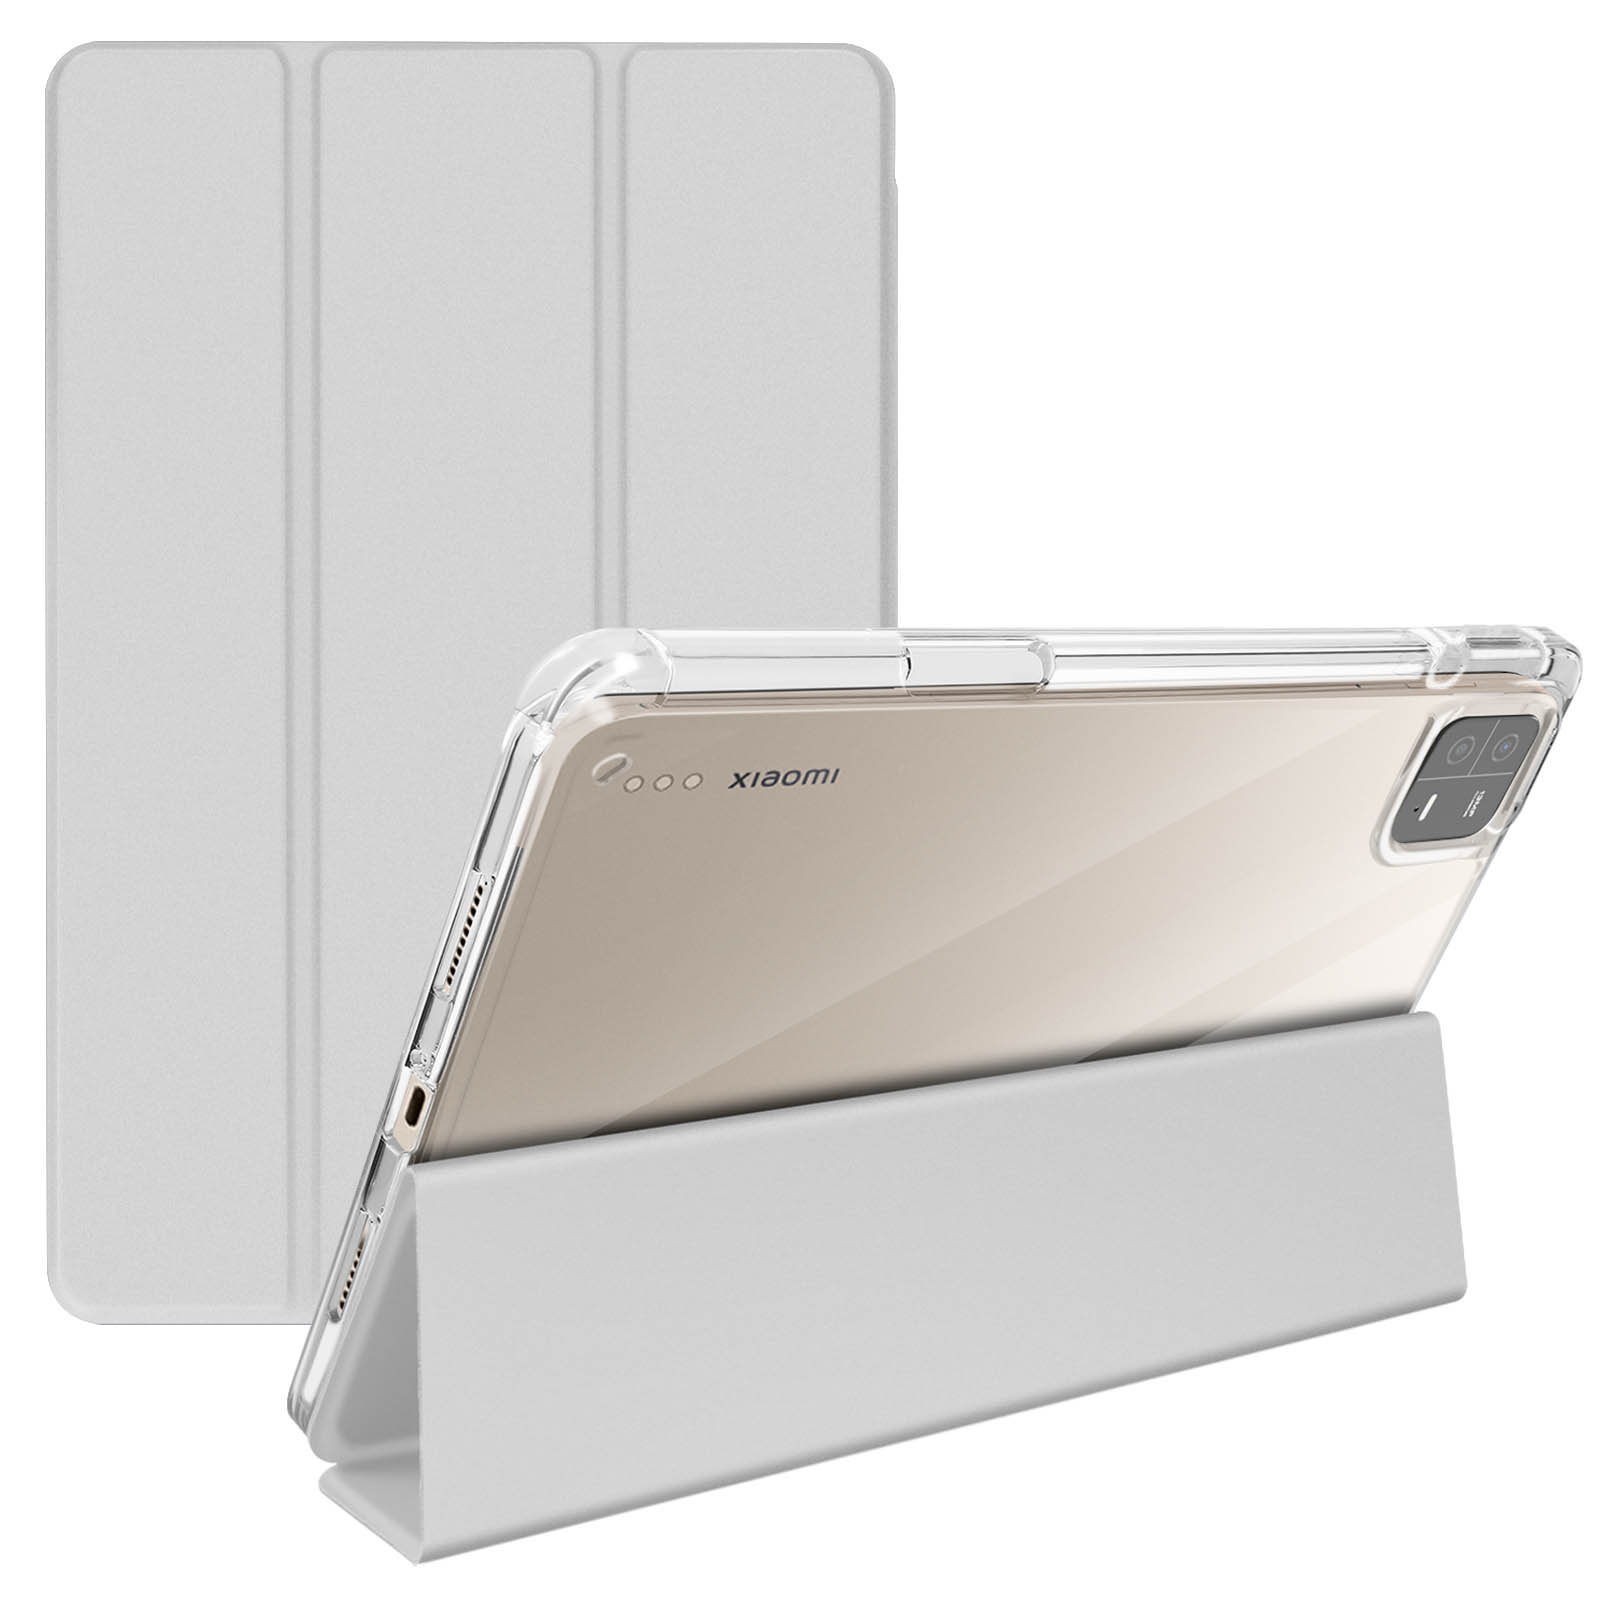 Accesorios para el Xiaomi Pad 6 en Gsm55